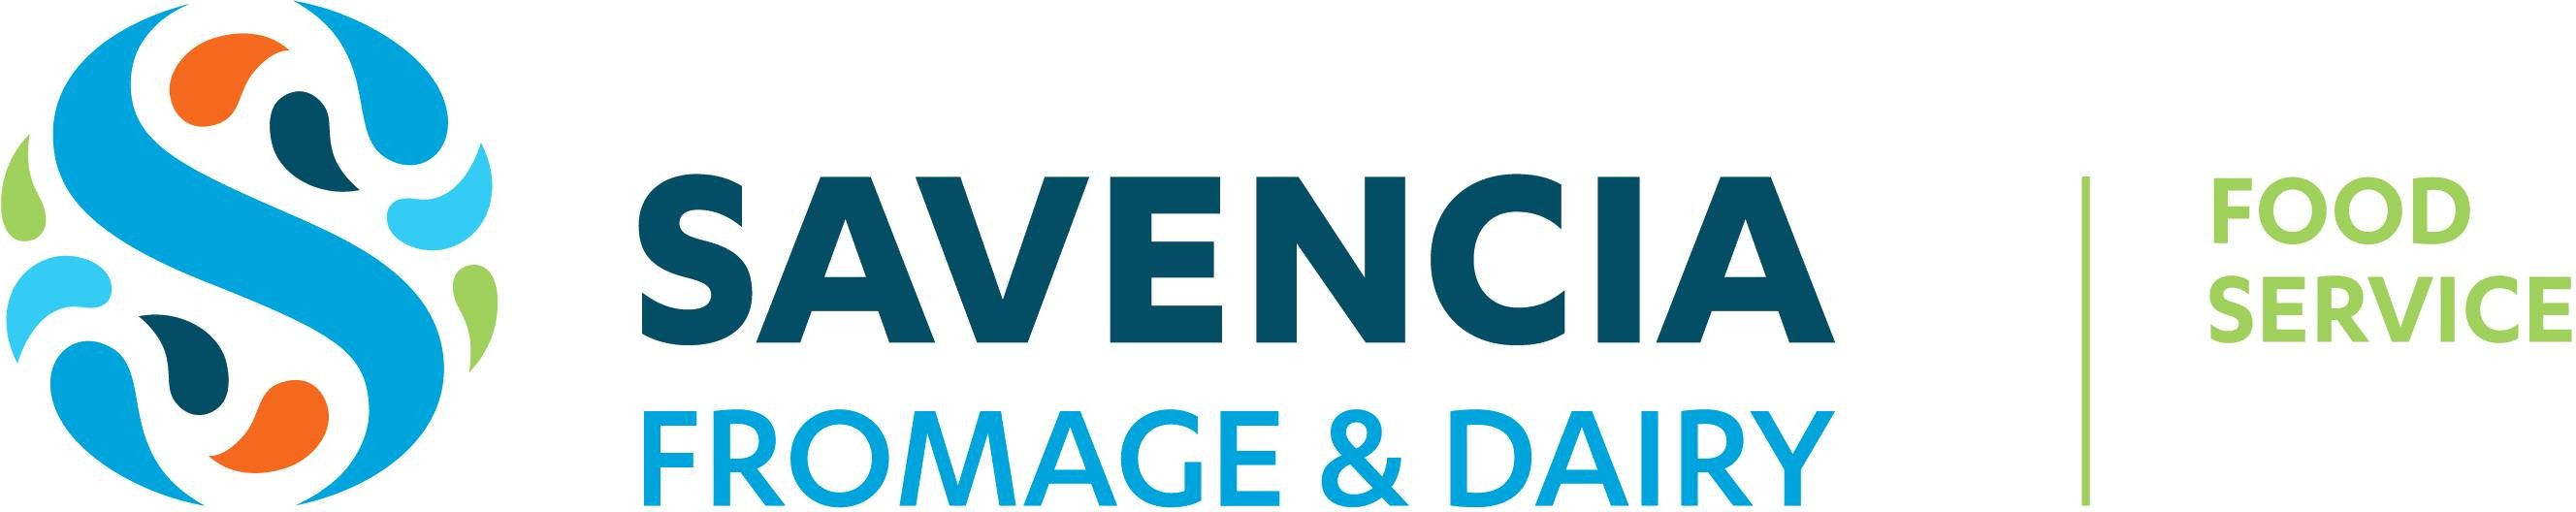 Savencia logo